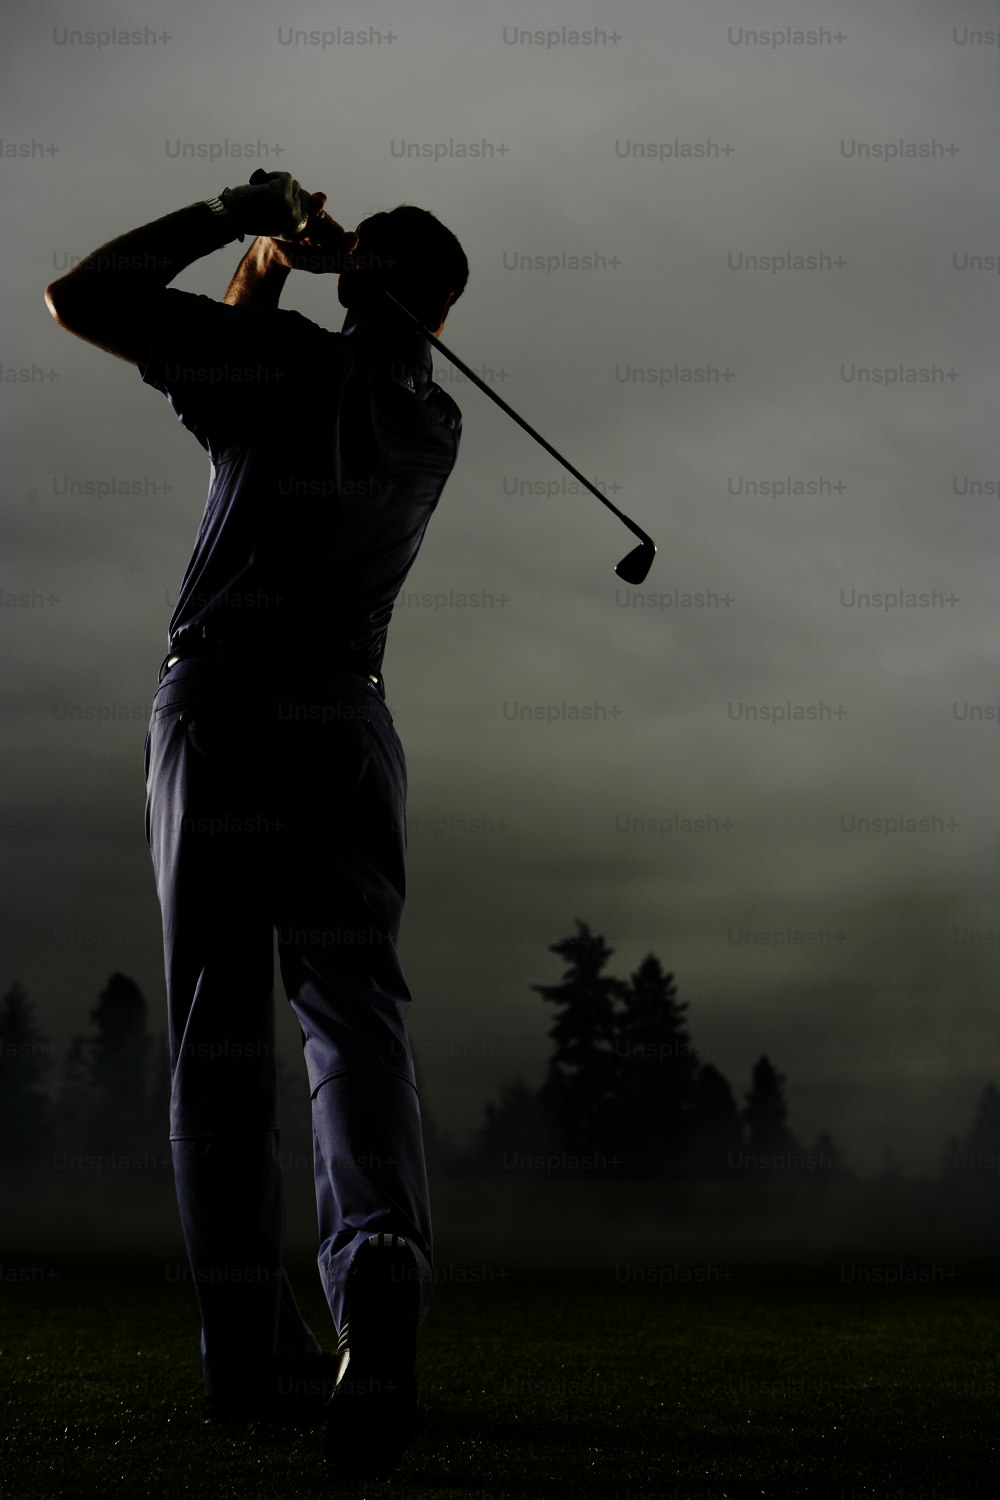 a man swinging a golf club on a foggy day